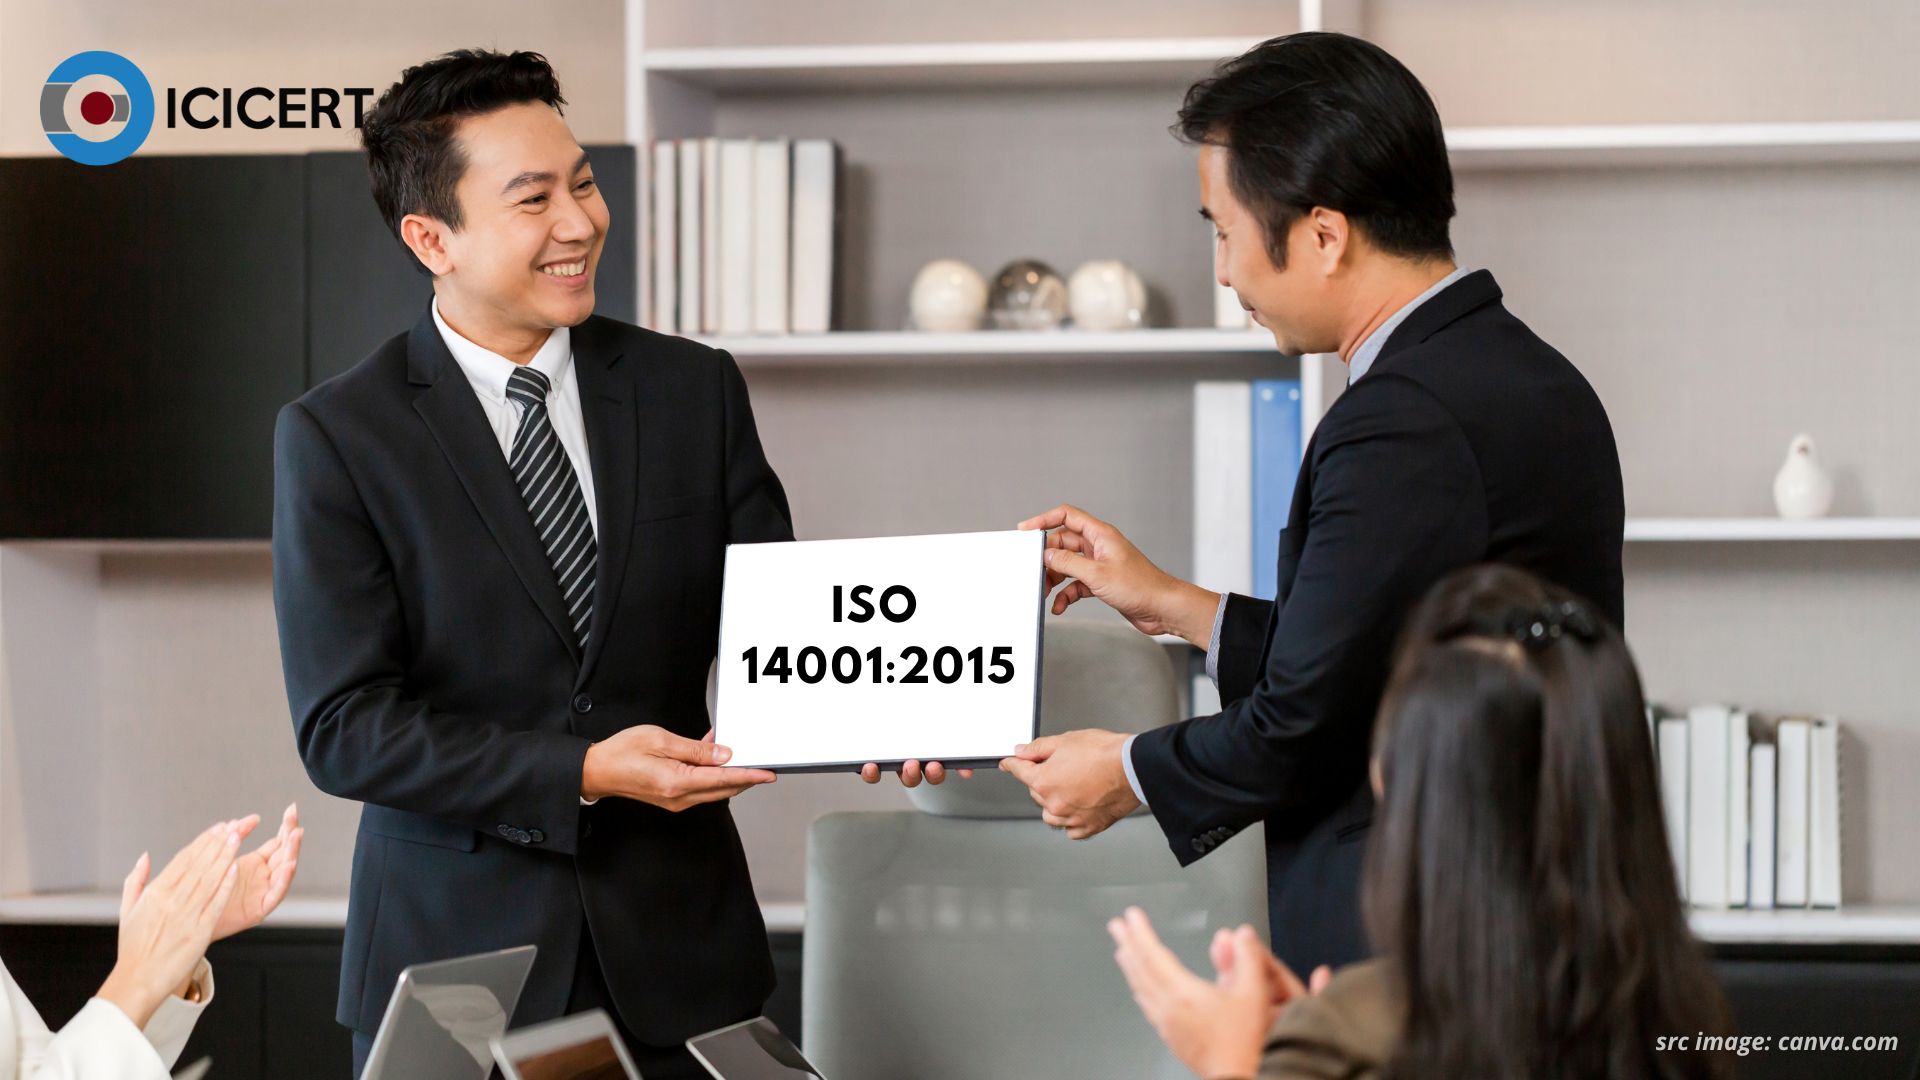 Panduan Lengkap Persiapan Sertifikasi ISO 14001 2015